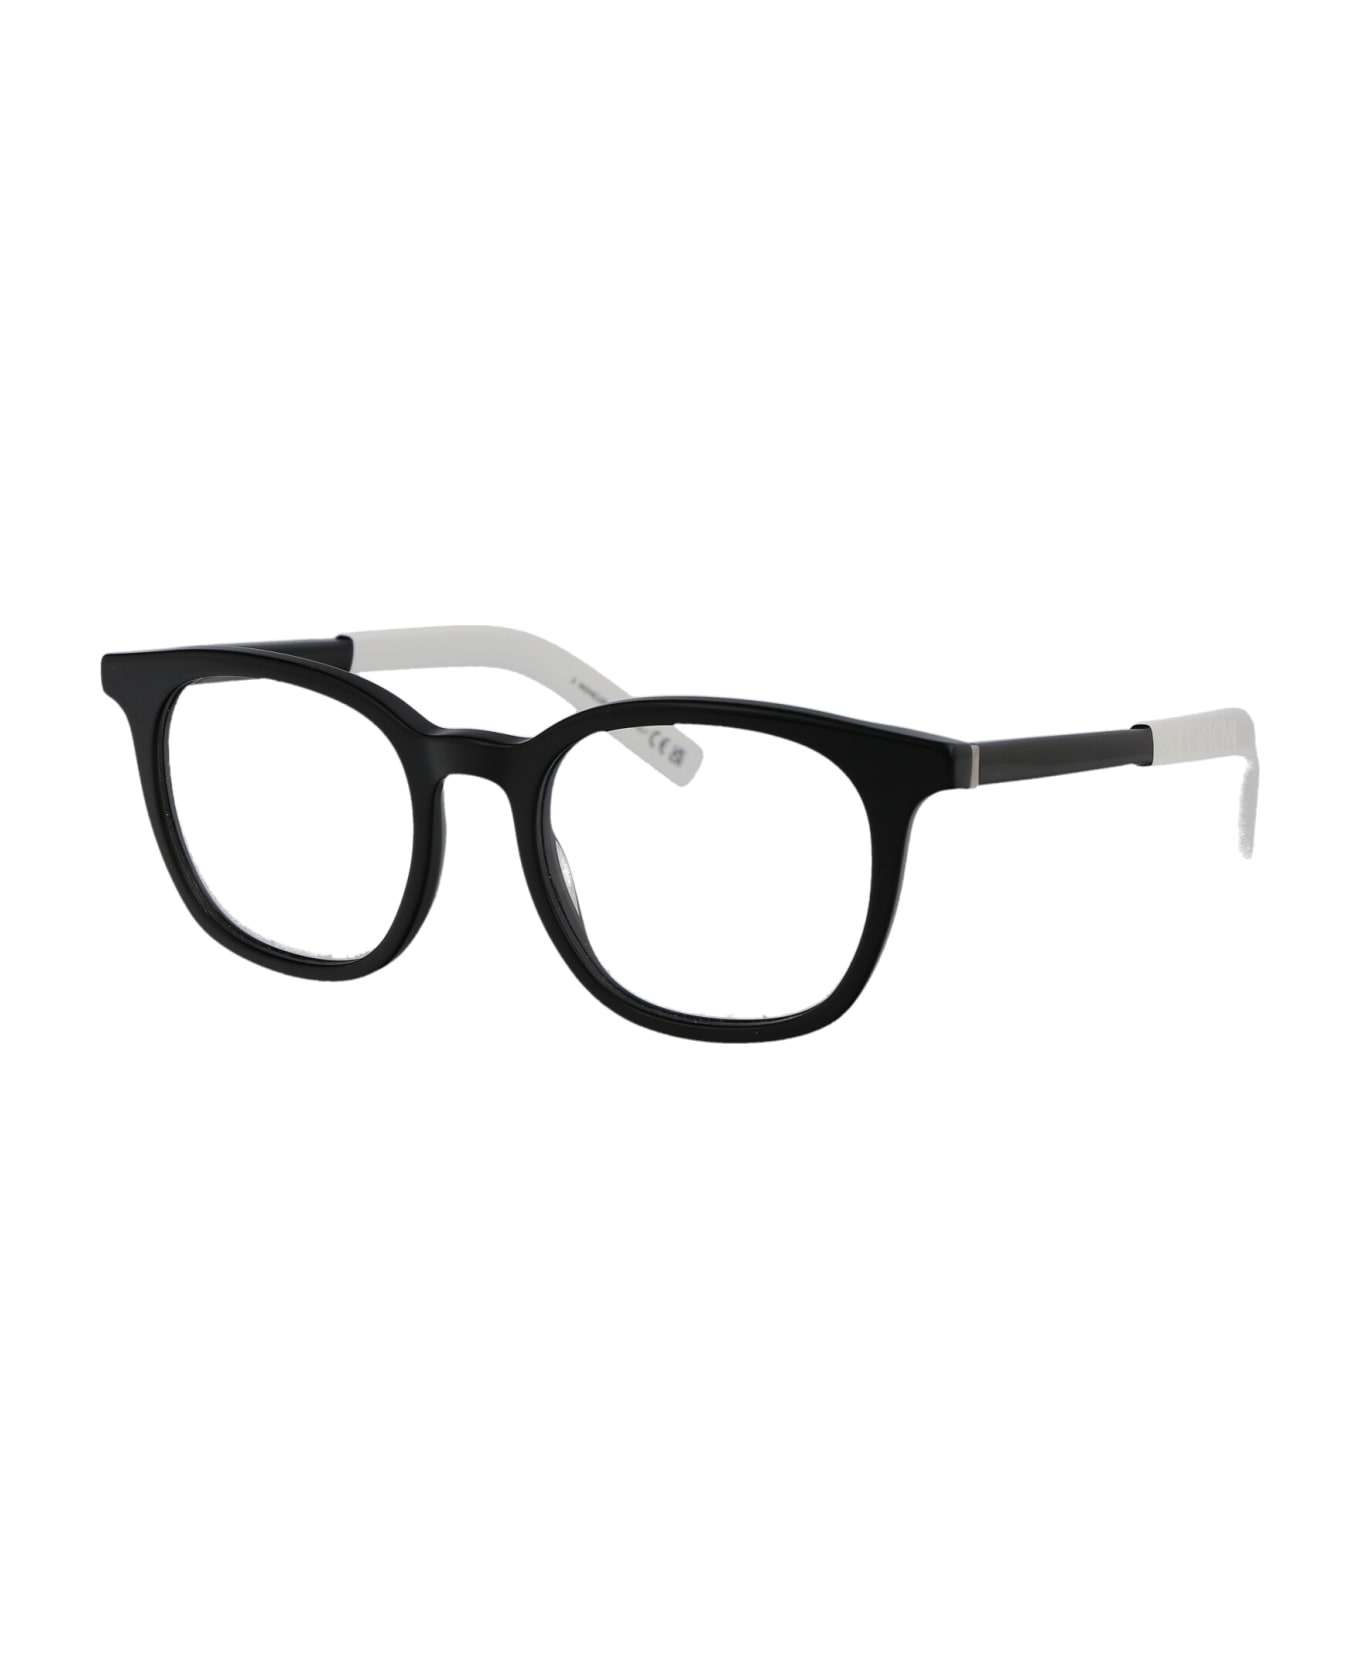 Moncler Eyewear Ml5207 Glasses - 001 Nero Lucido アイウェア